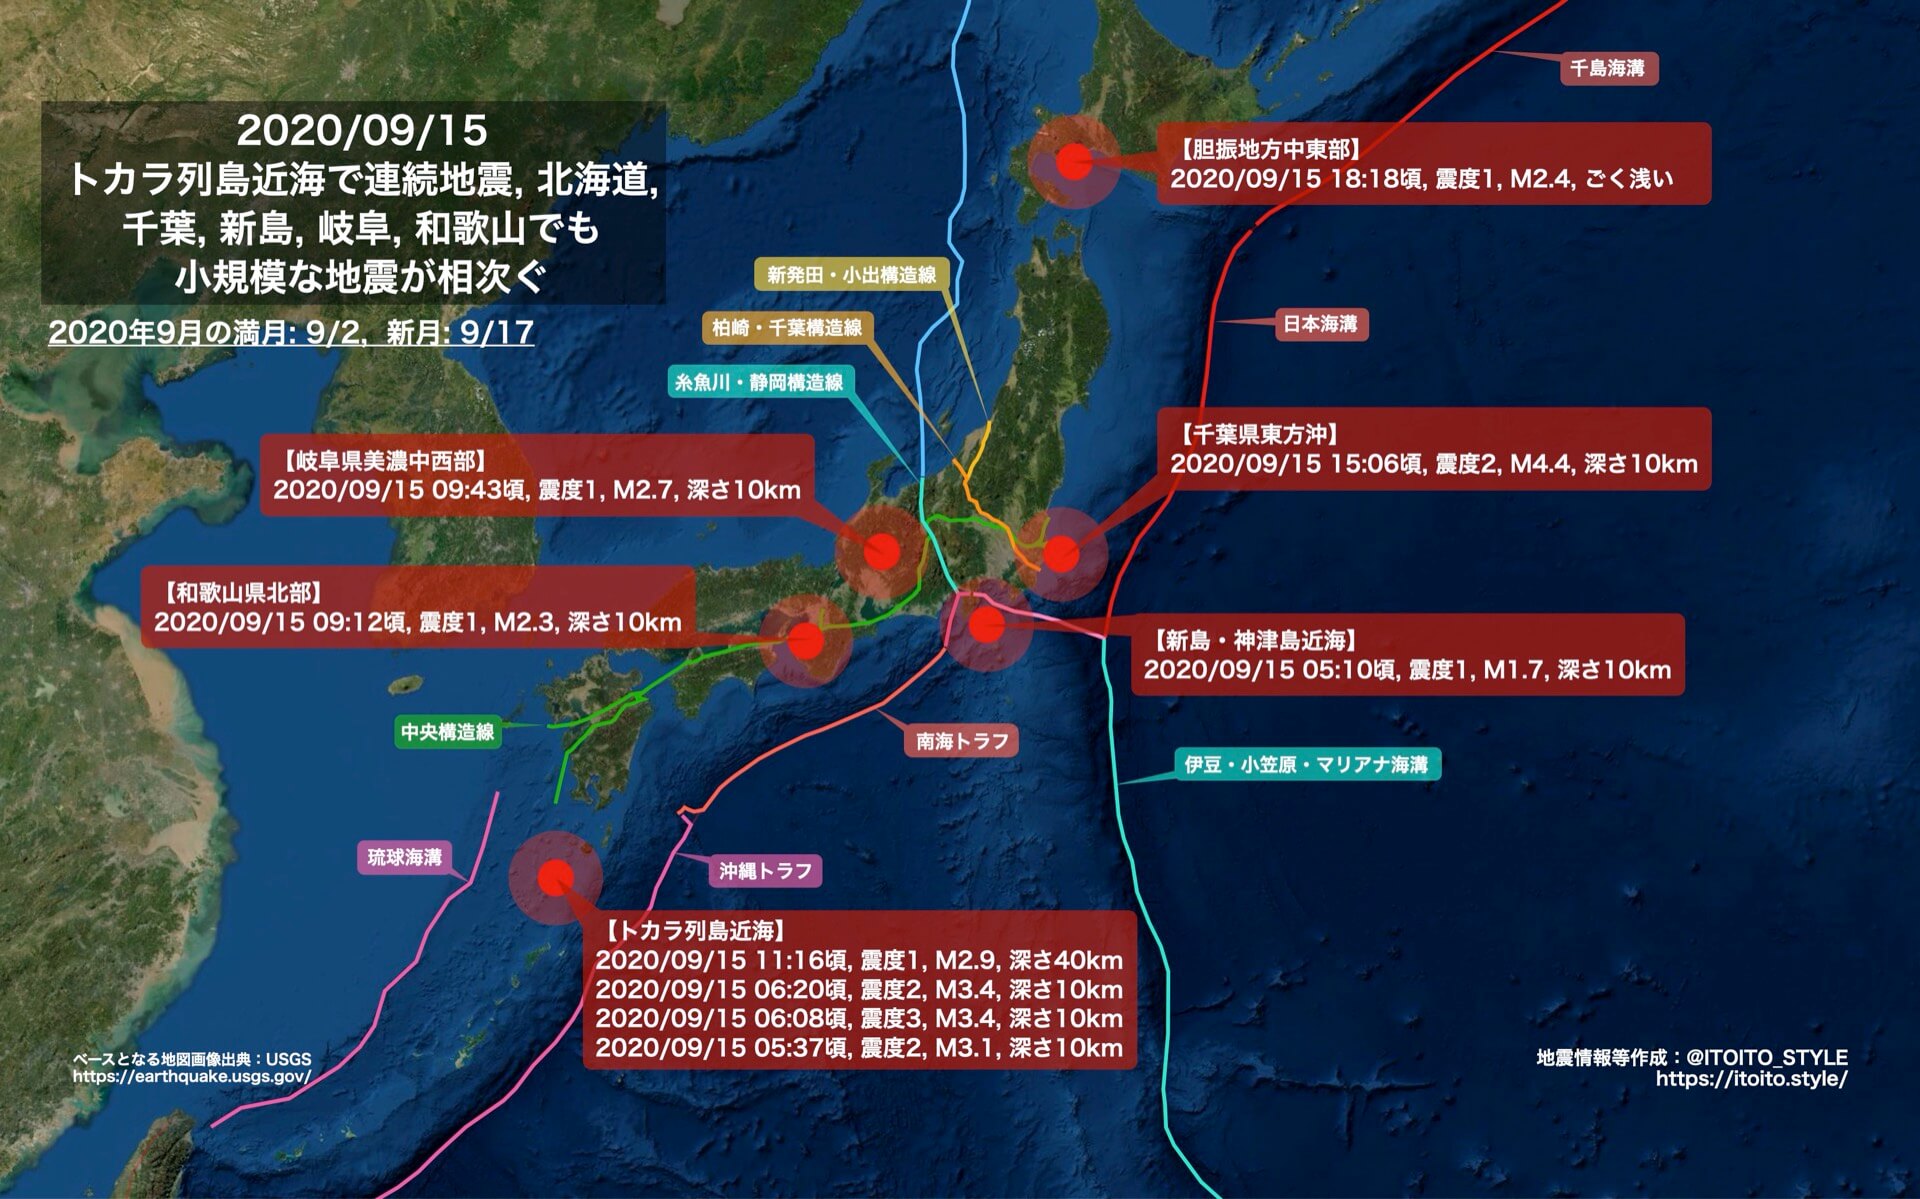 全国 トカラ列島近海で連続地震 北海道 千葉 新島 岐阜 和歌山でも小規模な地震が相次ぐ 09 15 Itoito Style